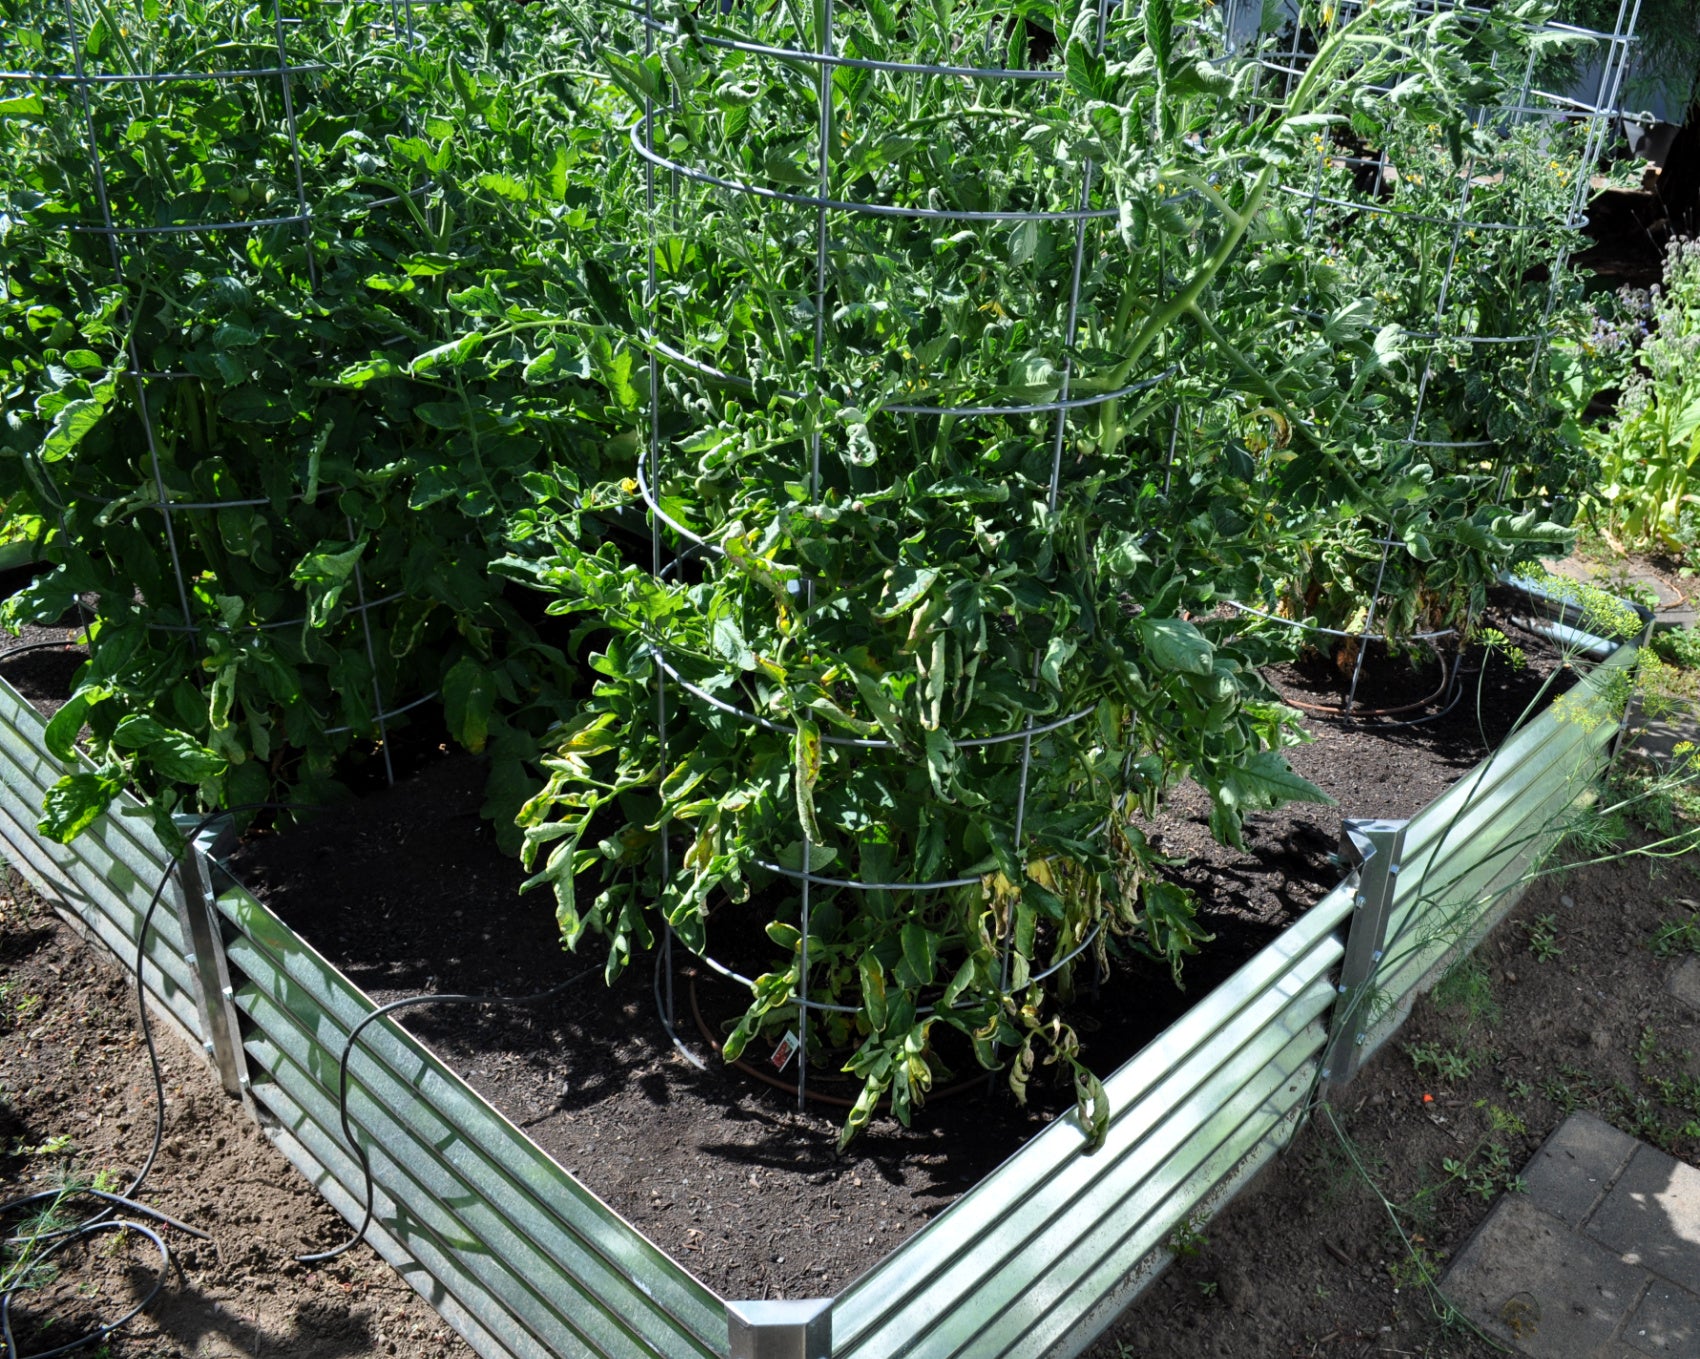 cerro garden bed growing tomatoes